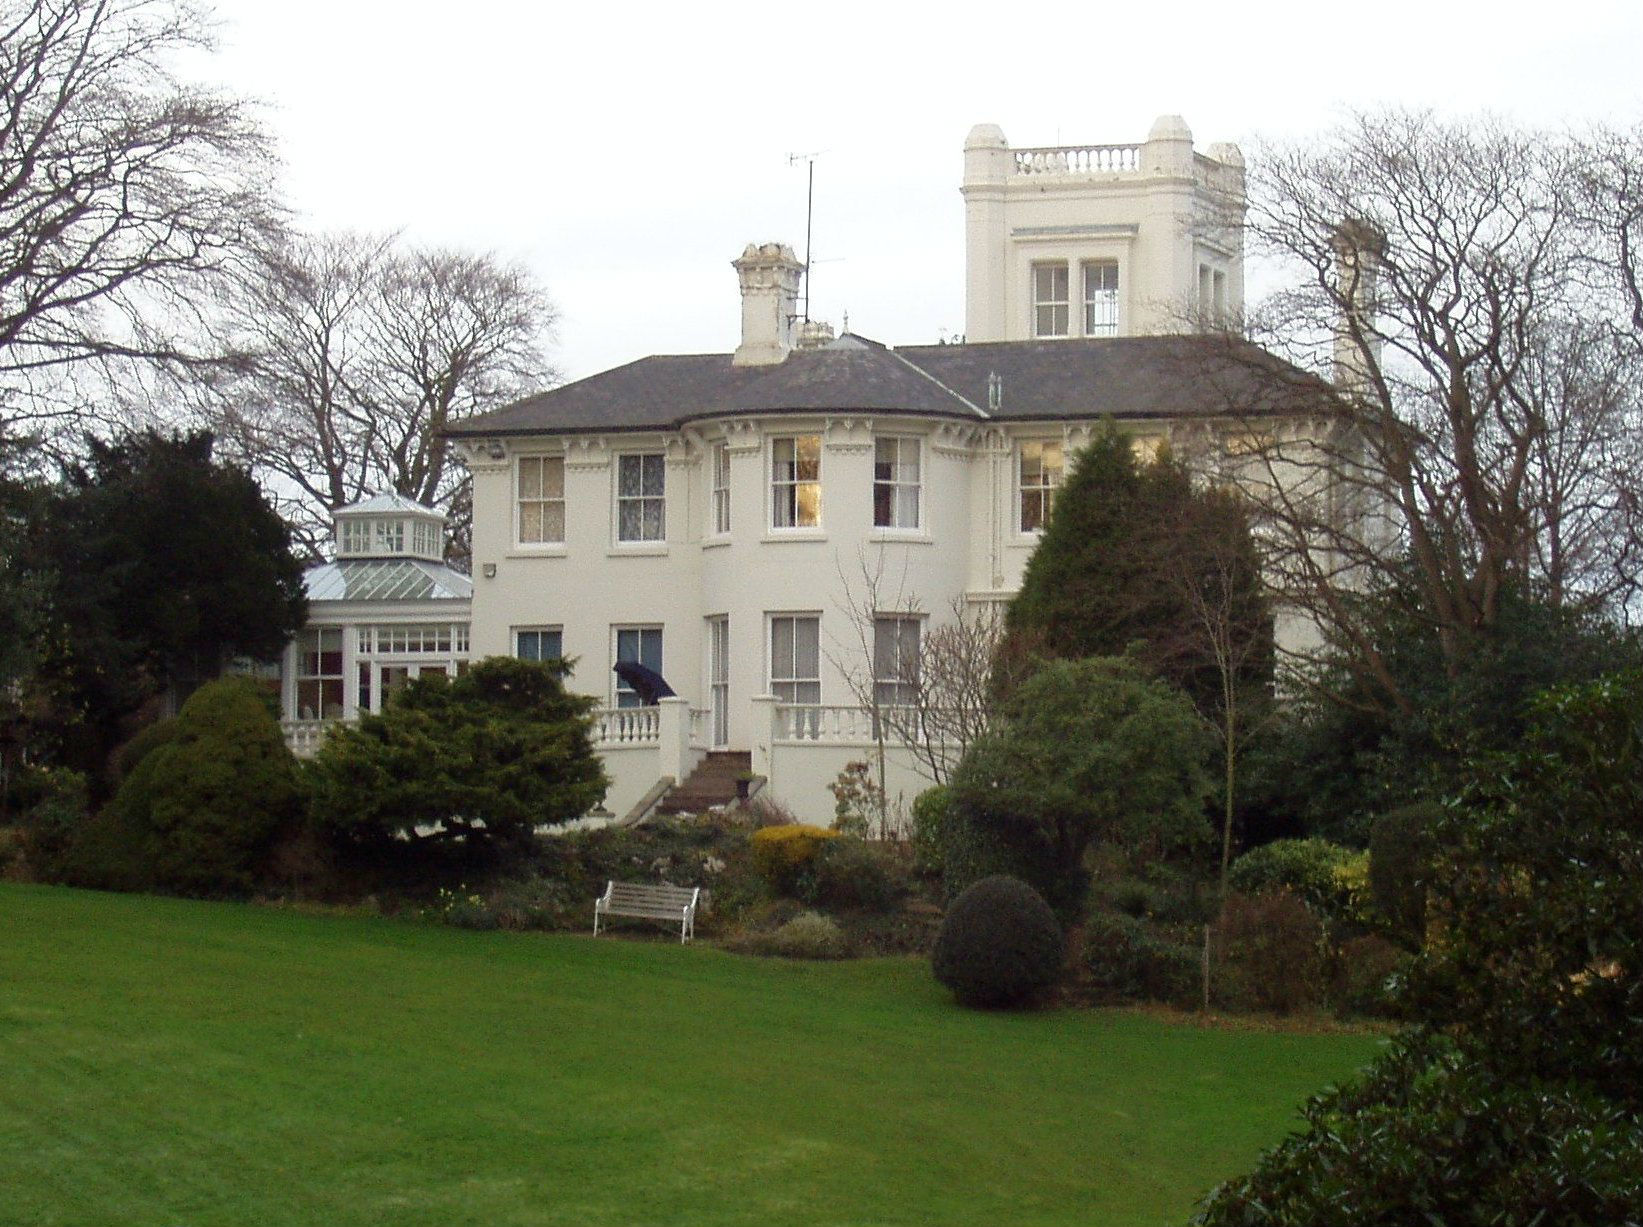 Southlands, the home of Sir Samuel Sadler, is built of slag concrete